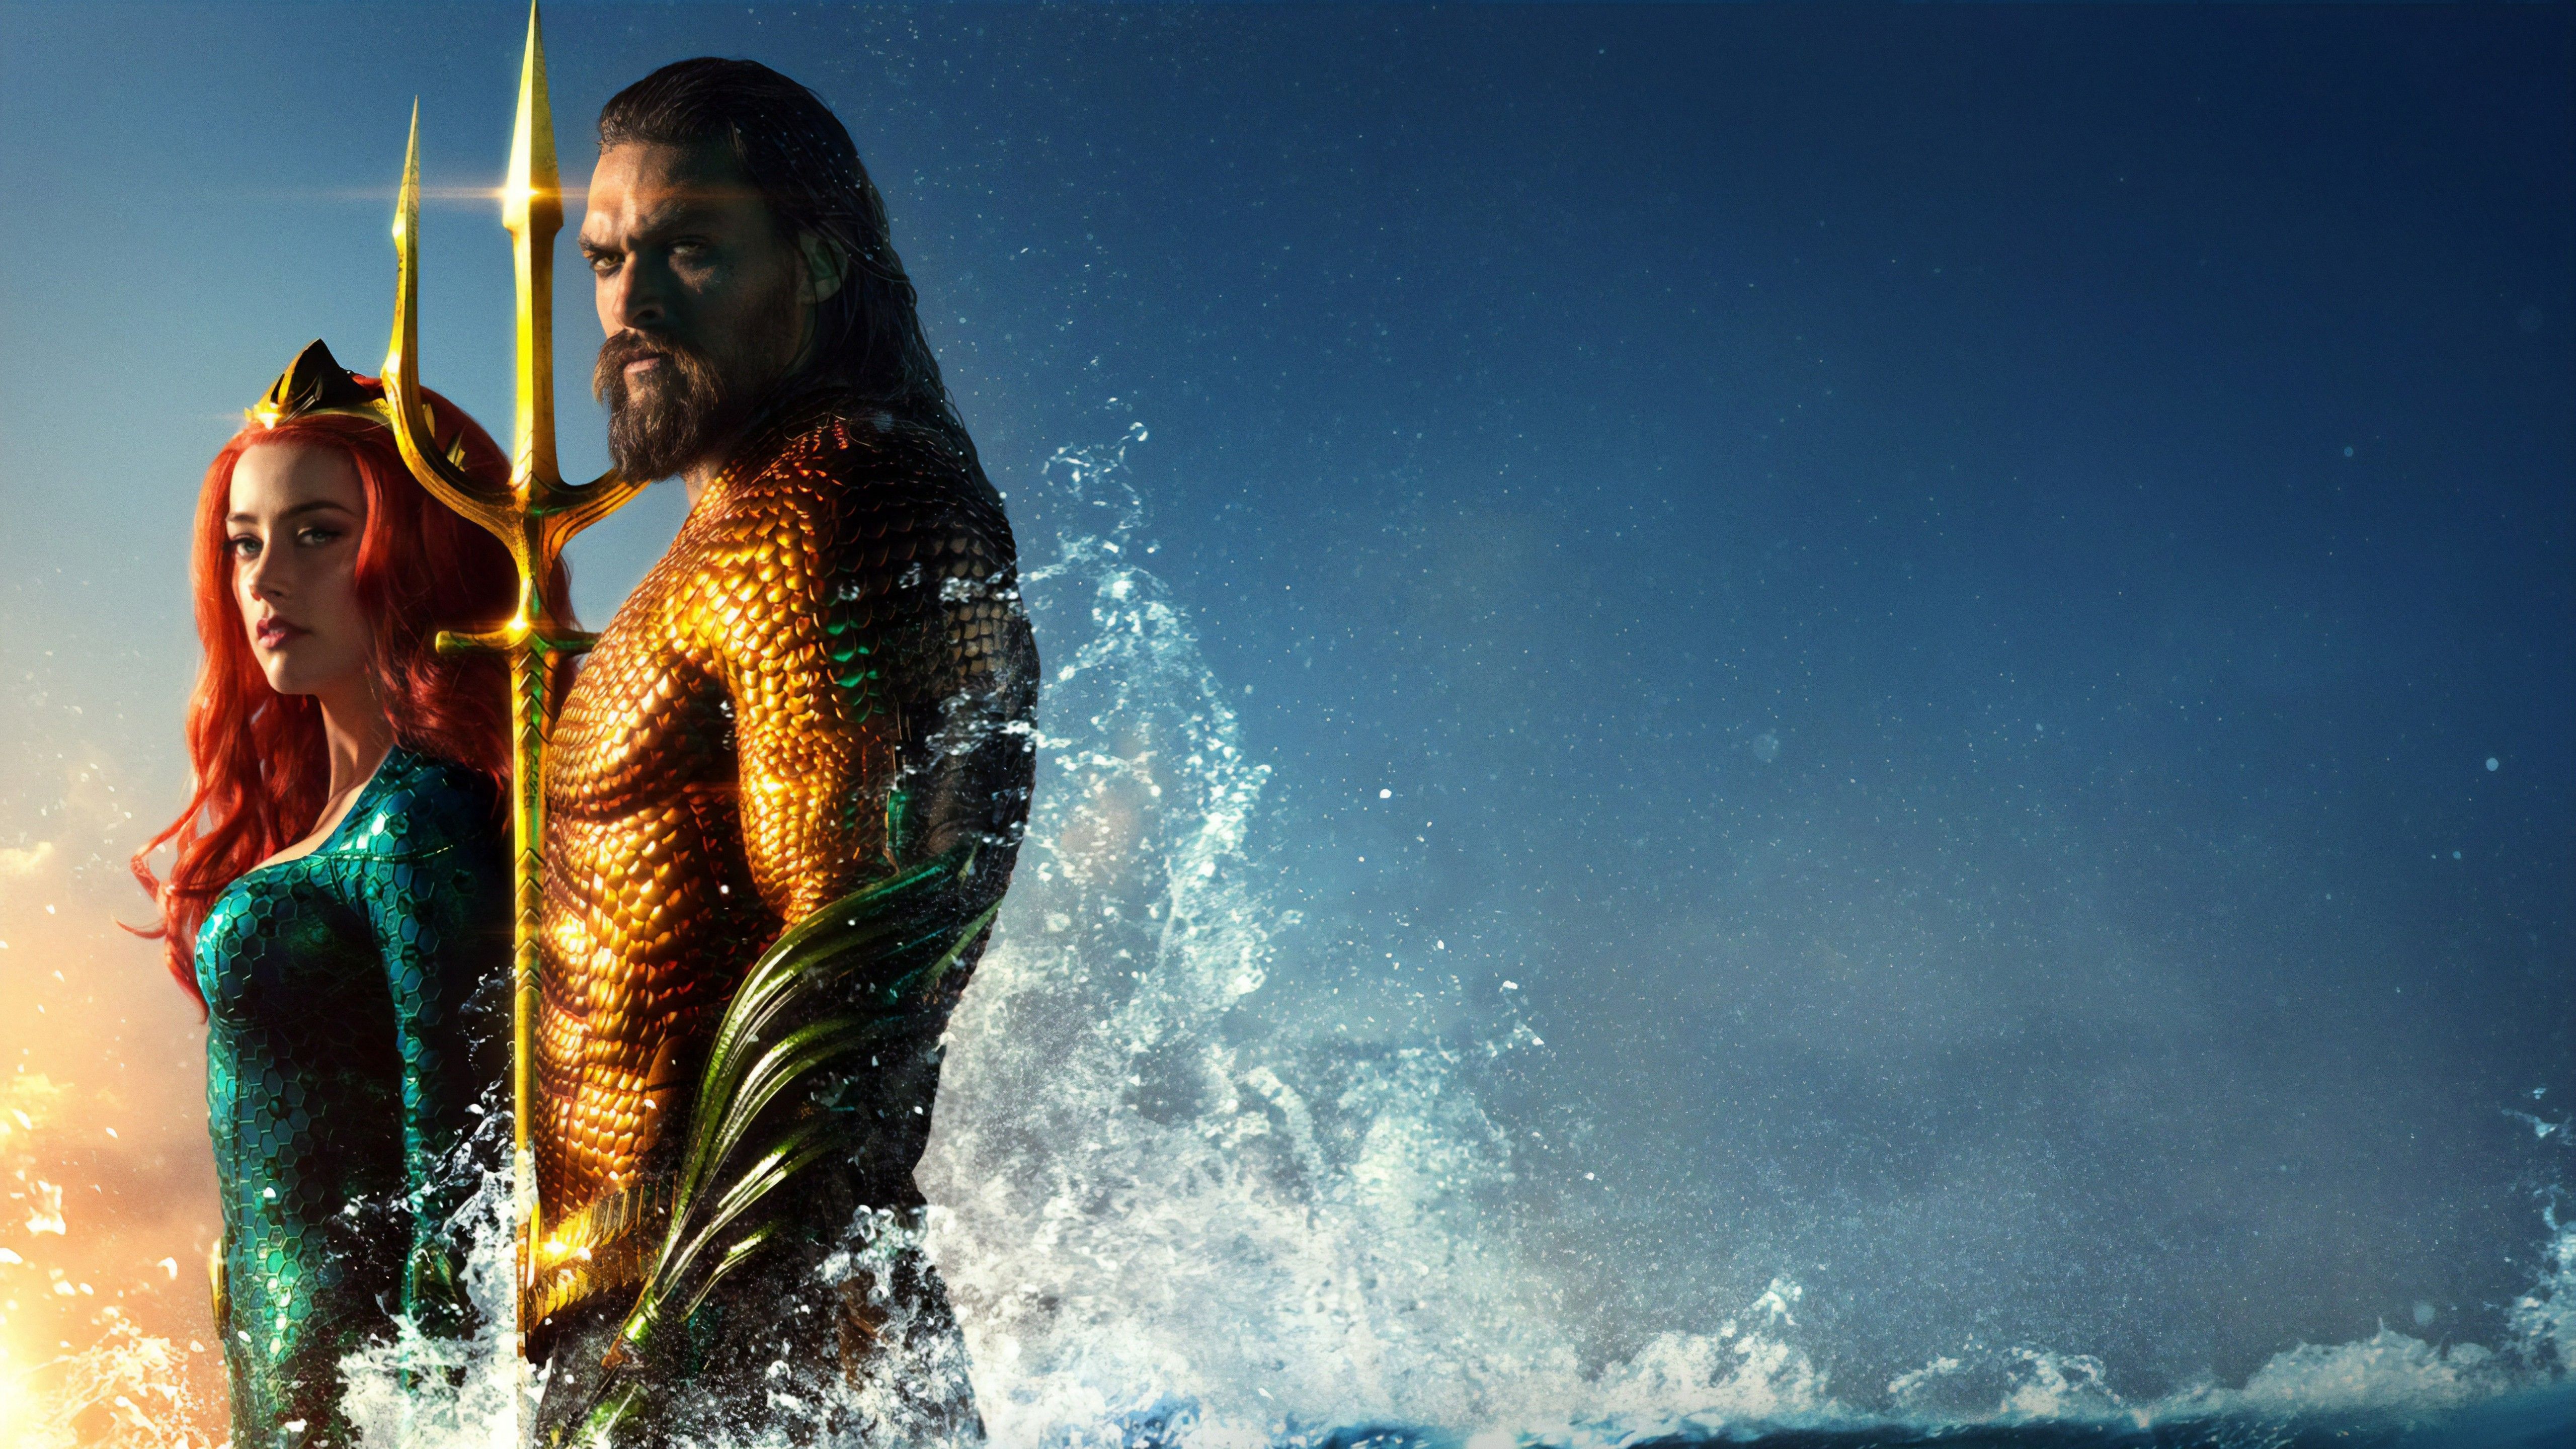 Mera & Aquaman in Aquaman 5K. Aquaman Aquaman, New poster